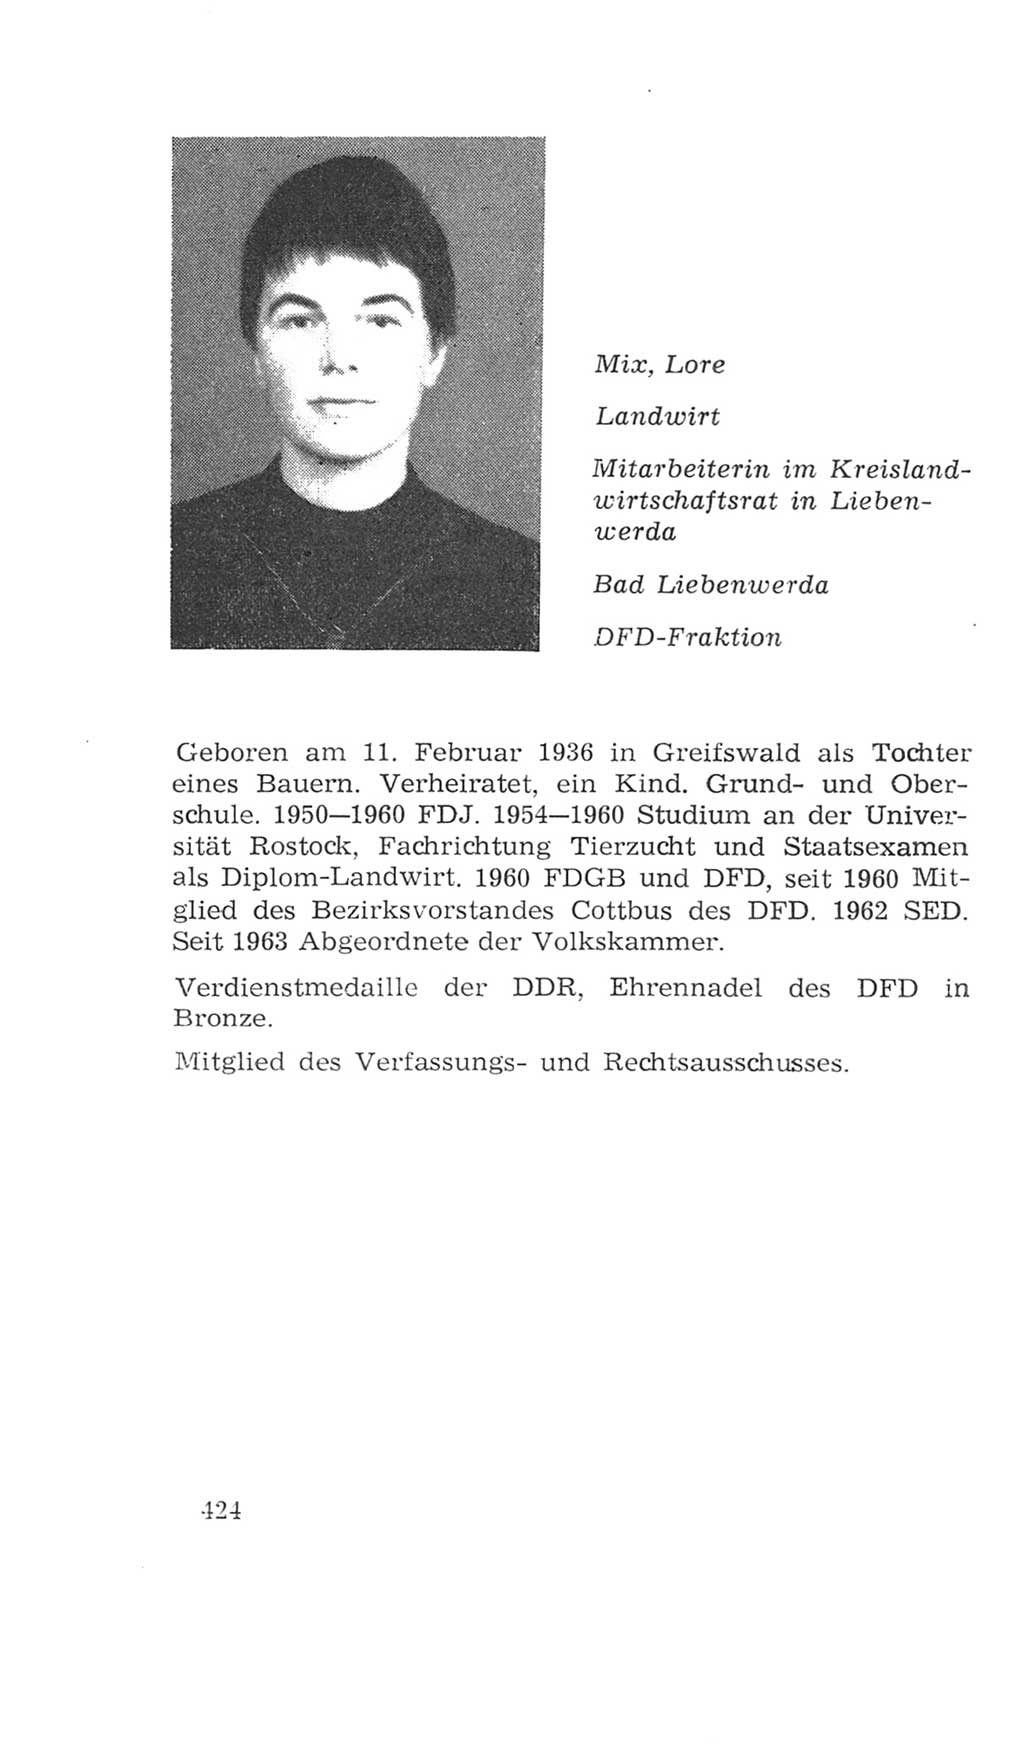 Volkskammer (VK) der Deutschen Demokratischen Republik (DDR), 4. Wahlperiode 1963-1967, Seite 424 (VK. DDR 4. WP. 1963-1967, S. 424)